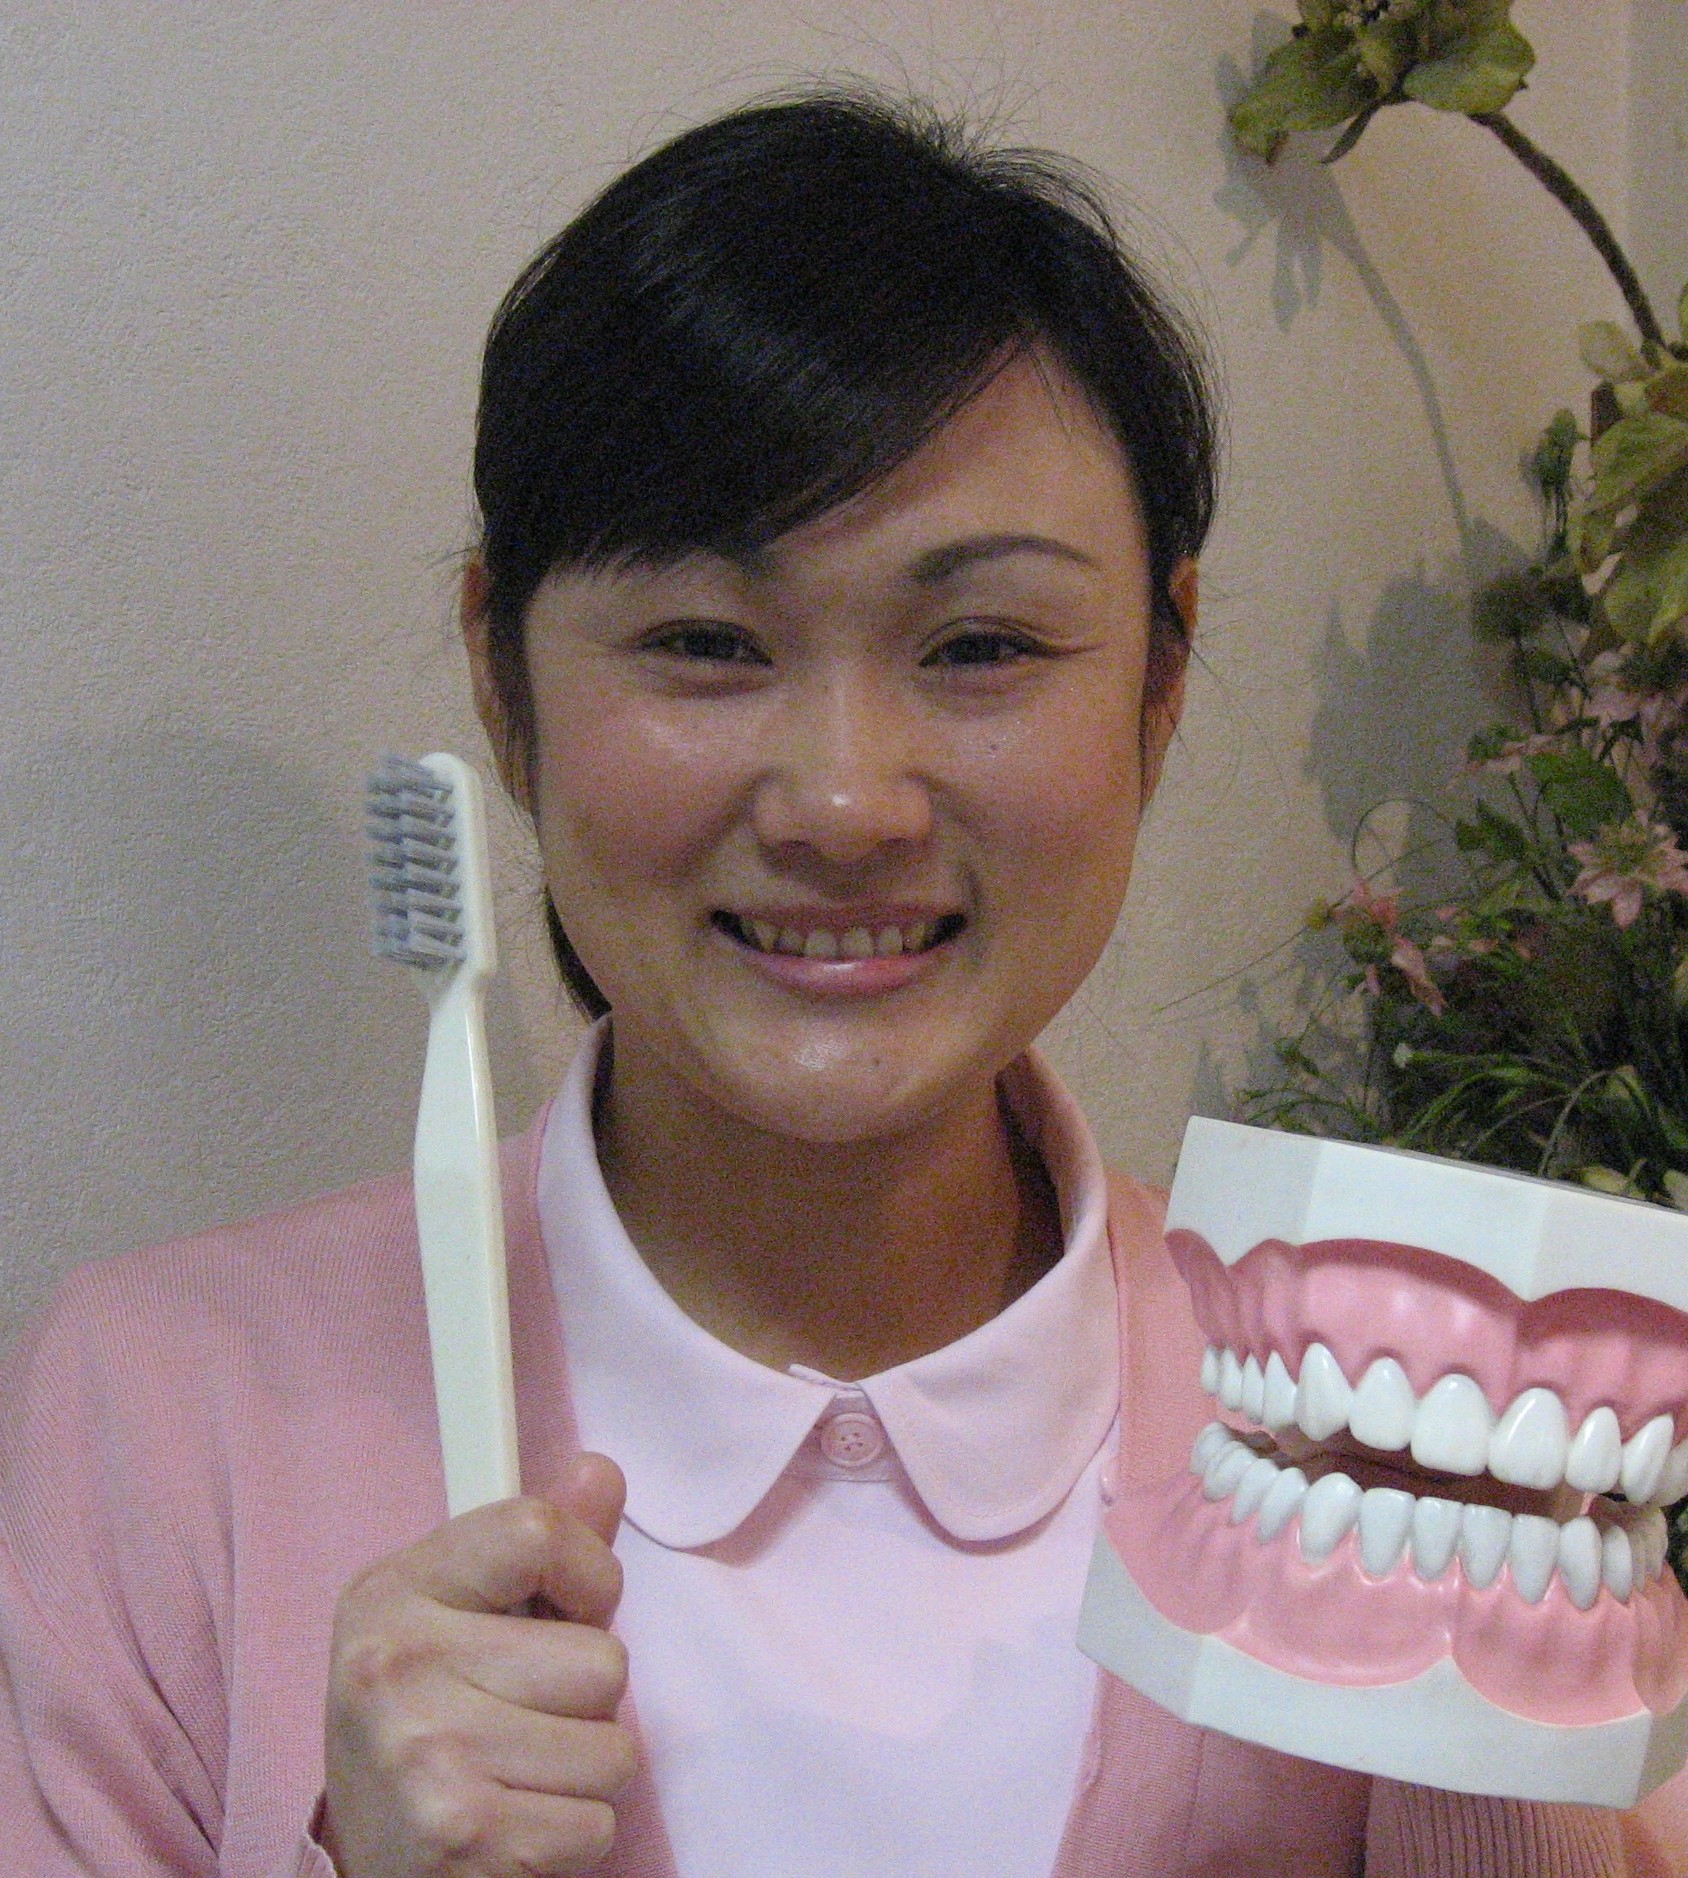 歯科衛生士